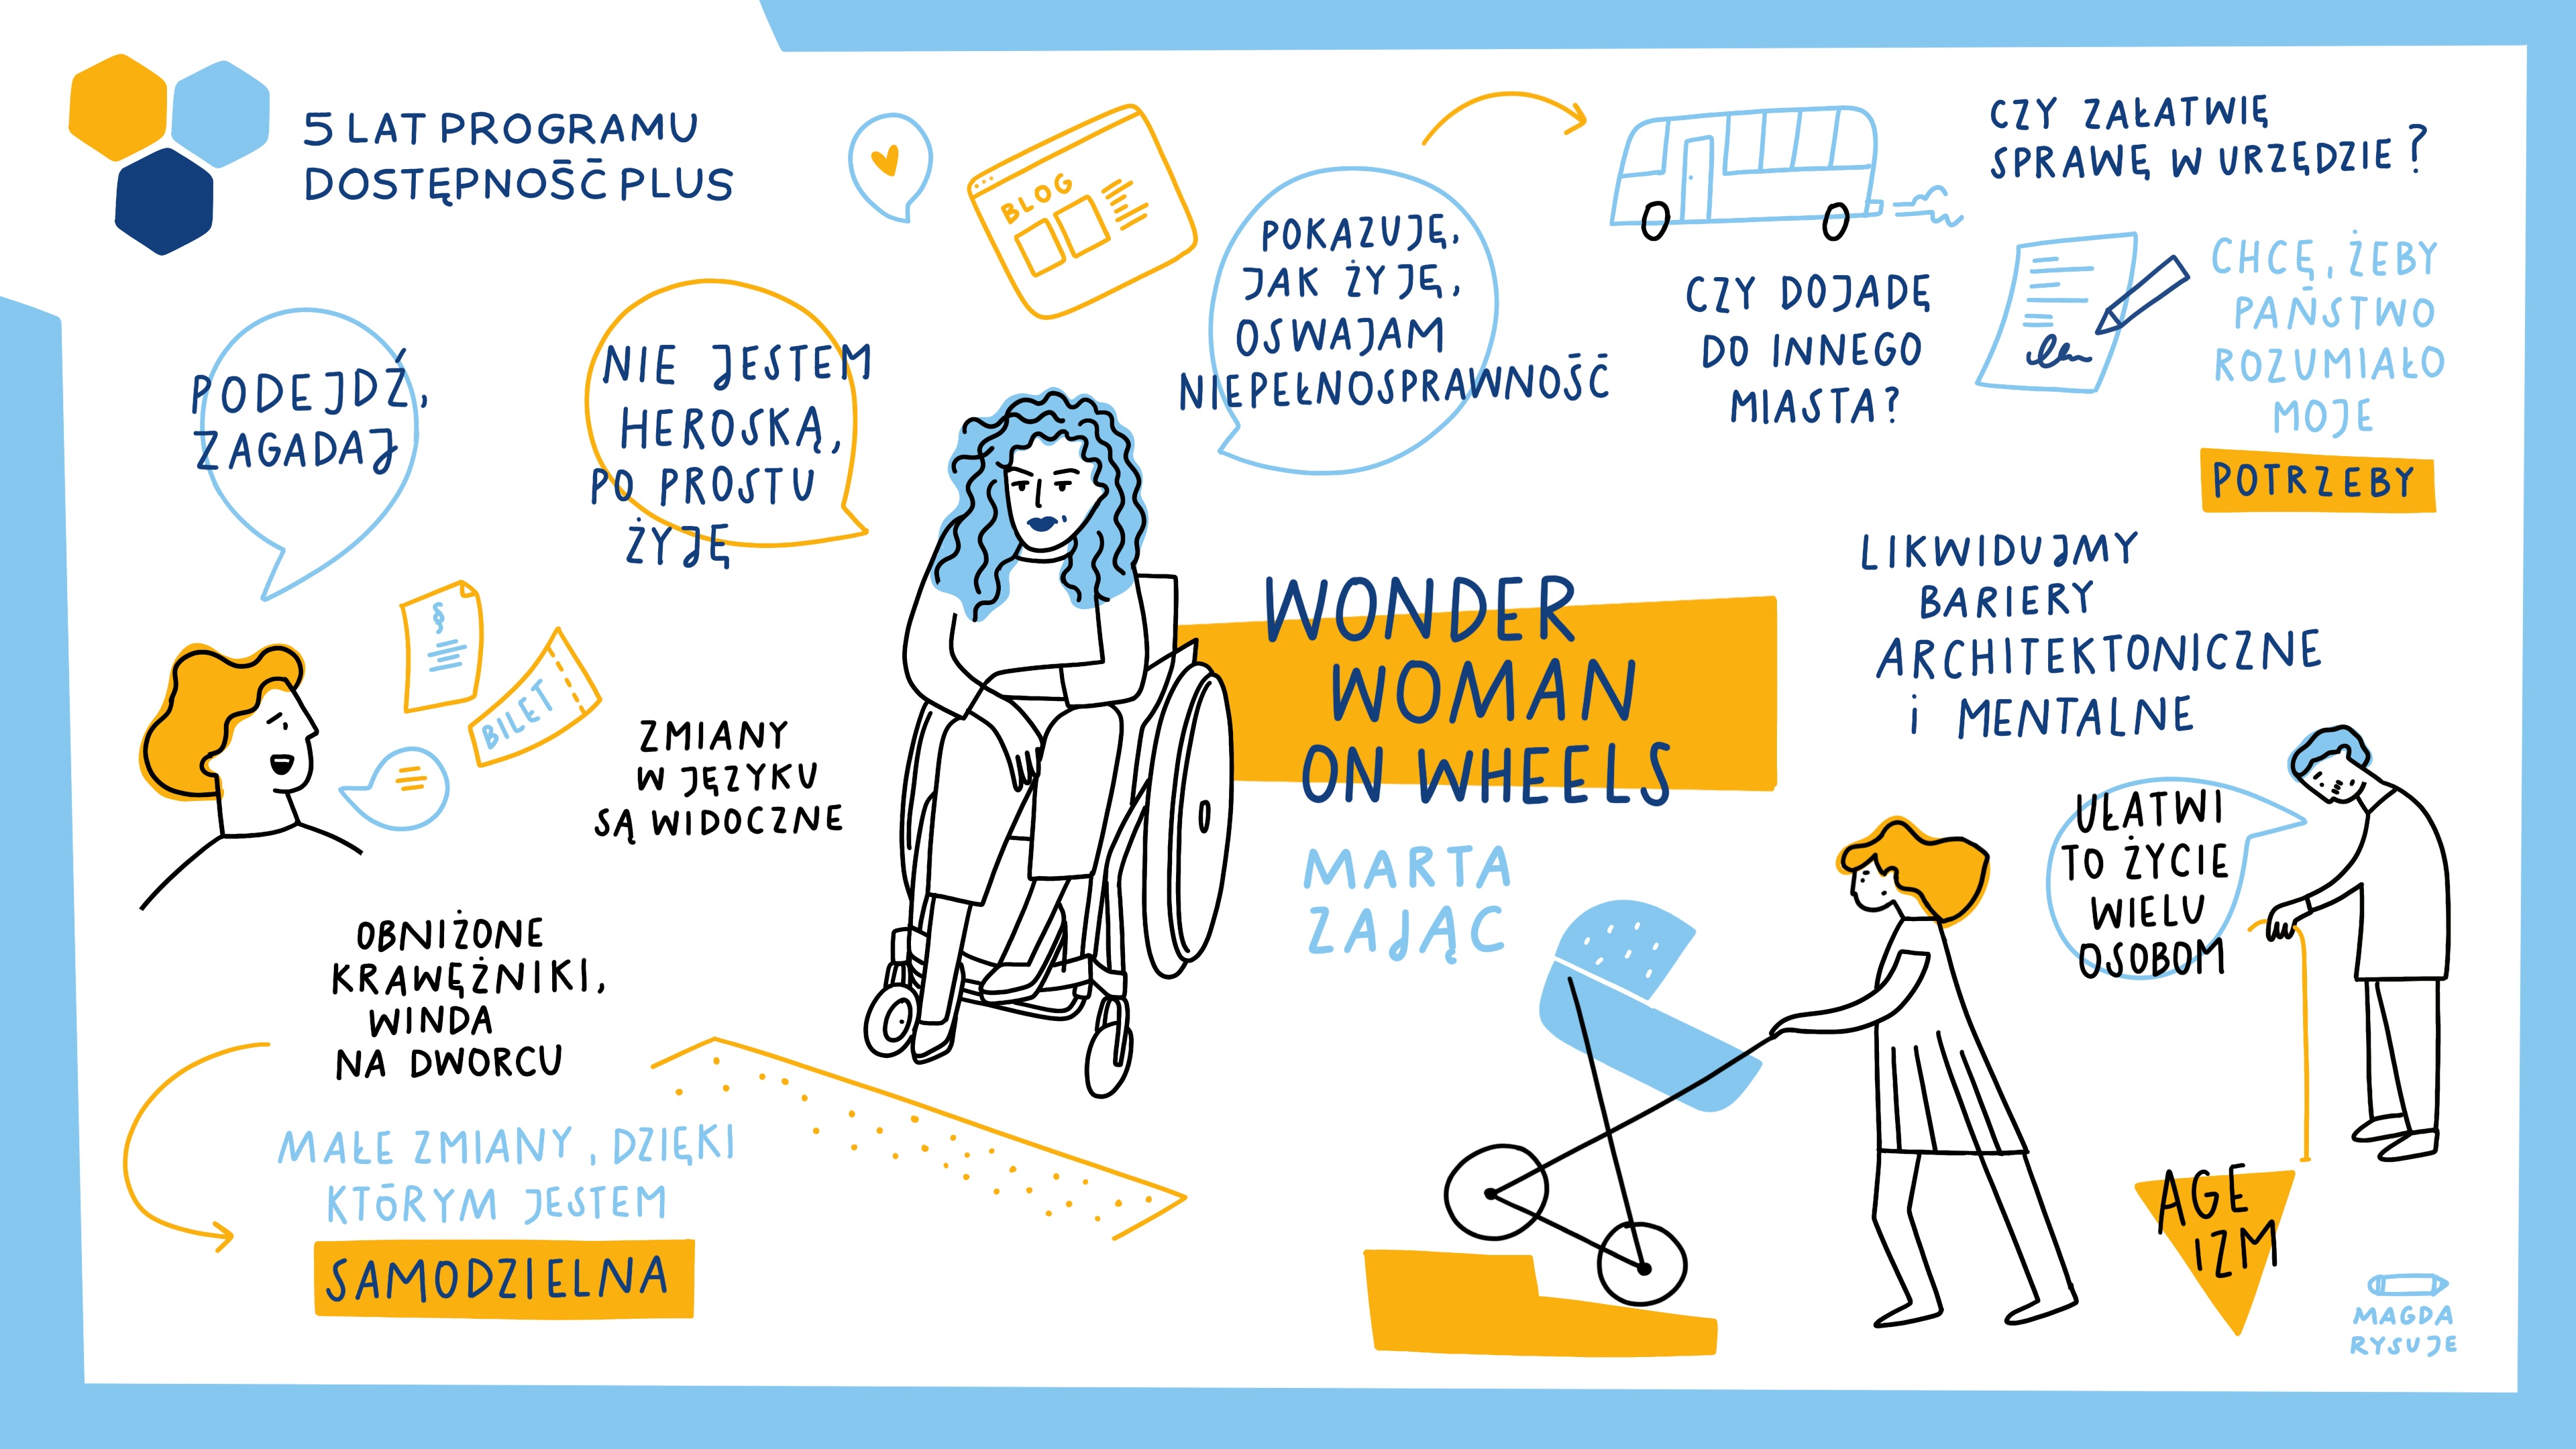 Notatka graficzna z wystąpienia Marty Zając „Wonder Woman on Wheels”. Pokazuję jak żyję, oswajam niepełnosprawność. Likwidujmy bariery architektoniczne i mentalne. Obniżone krawężniki, winda na dworcu – małe zmiany, dzięki którym jestem samodzielna.